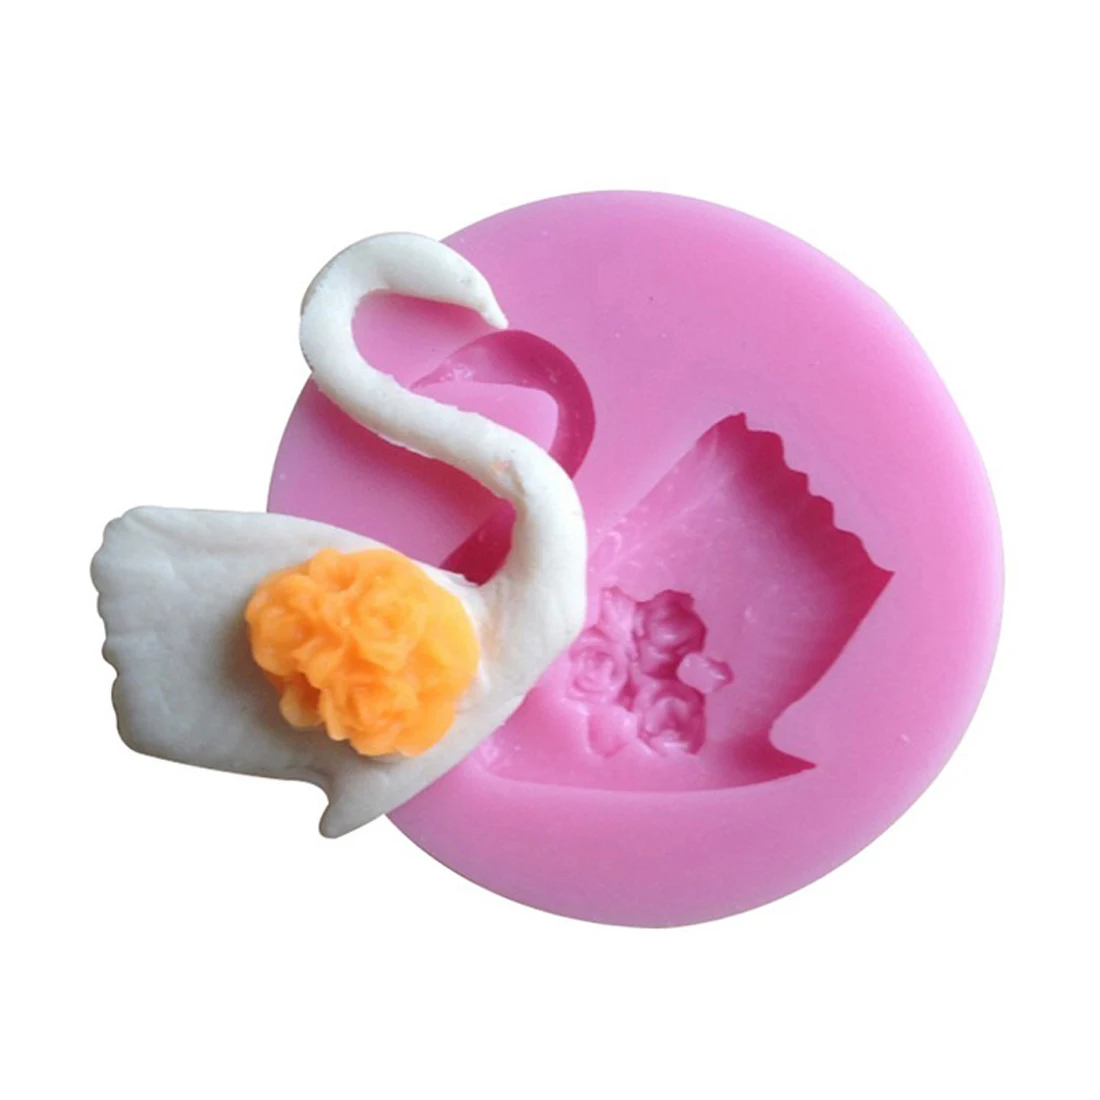 Novo! 3D Swan Bolo Bakeware Molde 3D Molde de Silicone DIY de Chocolate, Geléia, Doces de Pastelaria, Decoração de Sabão Molde Cozinha DIY Ferramentas